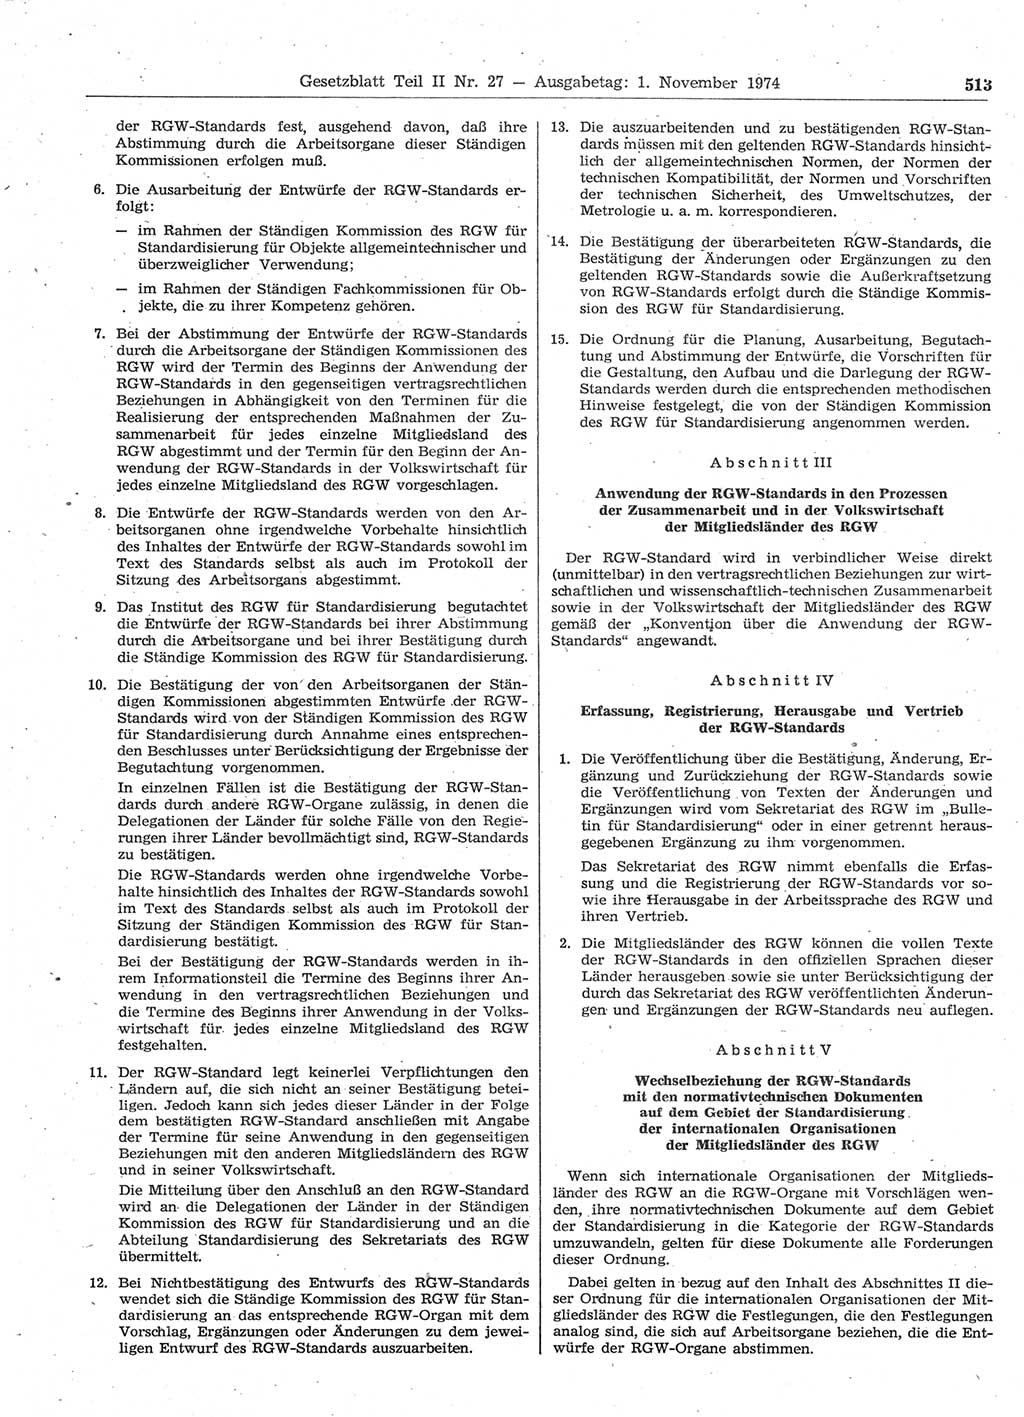 Gesetzblatt (GBl.) der Deutschen Demokratischen Republik (DDR) Teil ⅠⅠ 1974, Seite 513 (GBl. DDR ⅠⅠ 1974, S. 513)